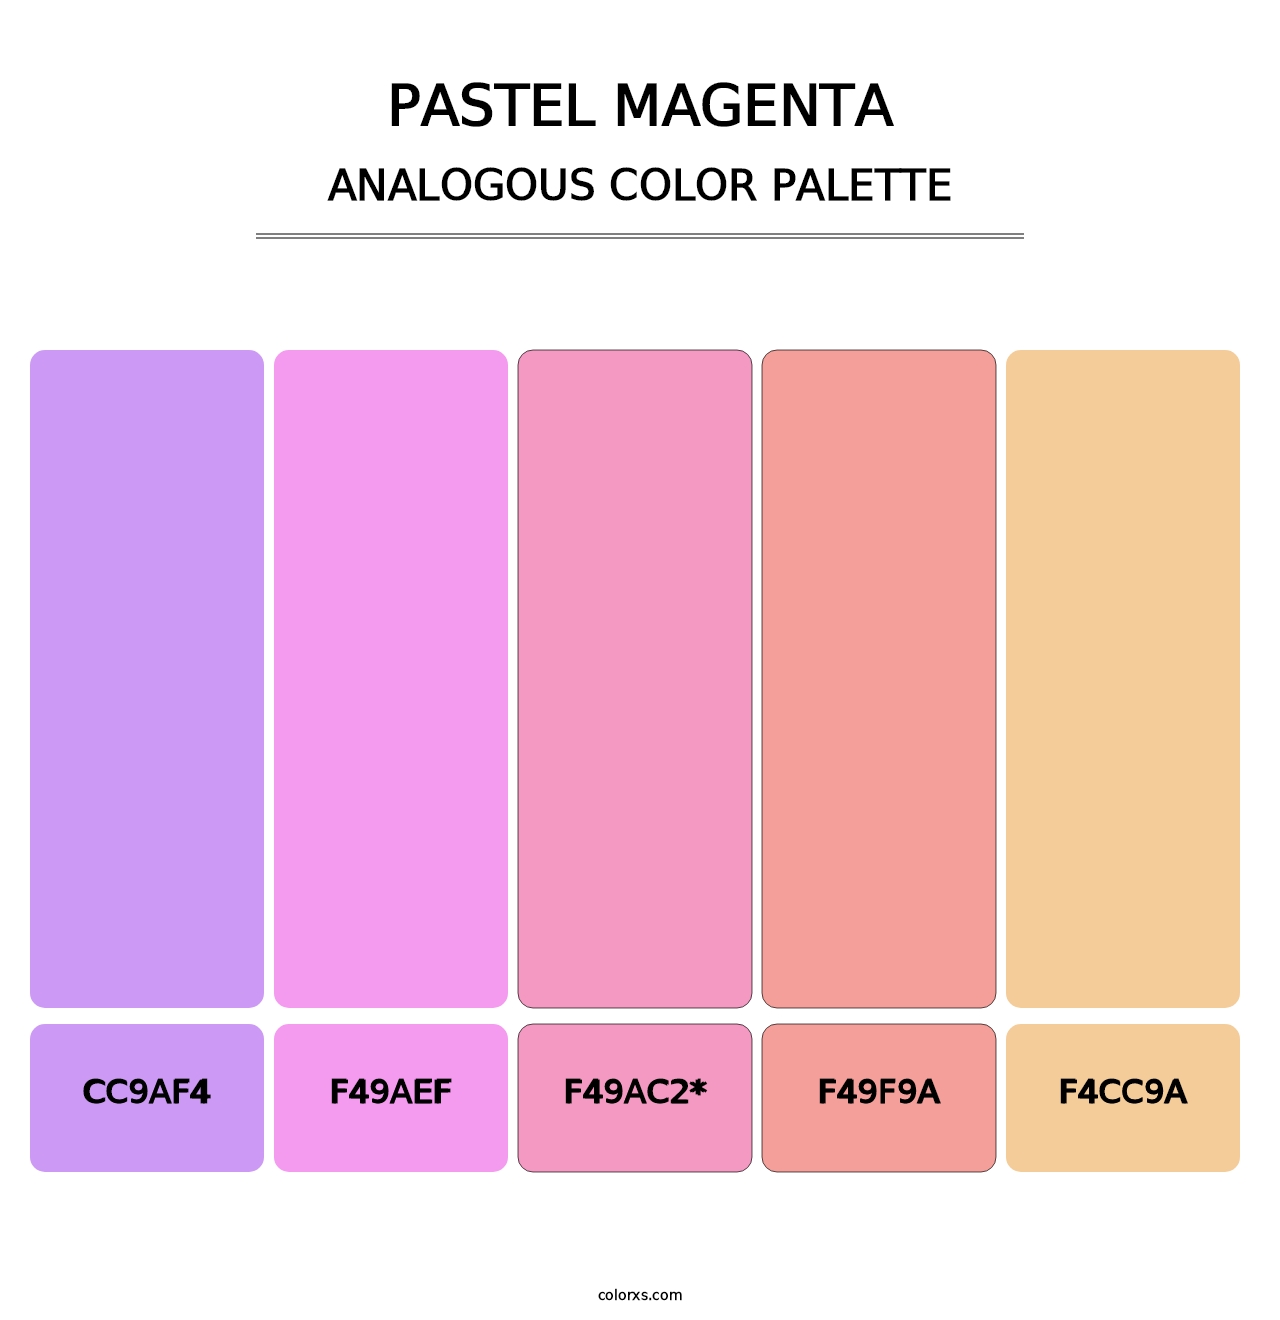 Pastel Magenta - Analogous Color Palette